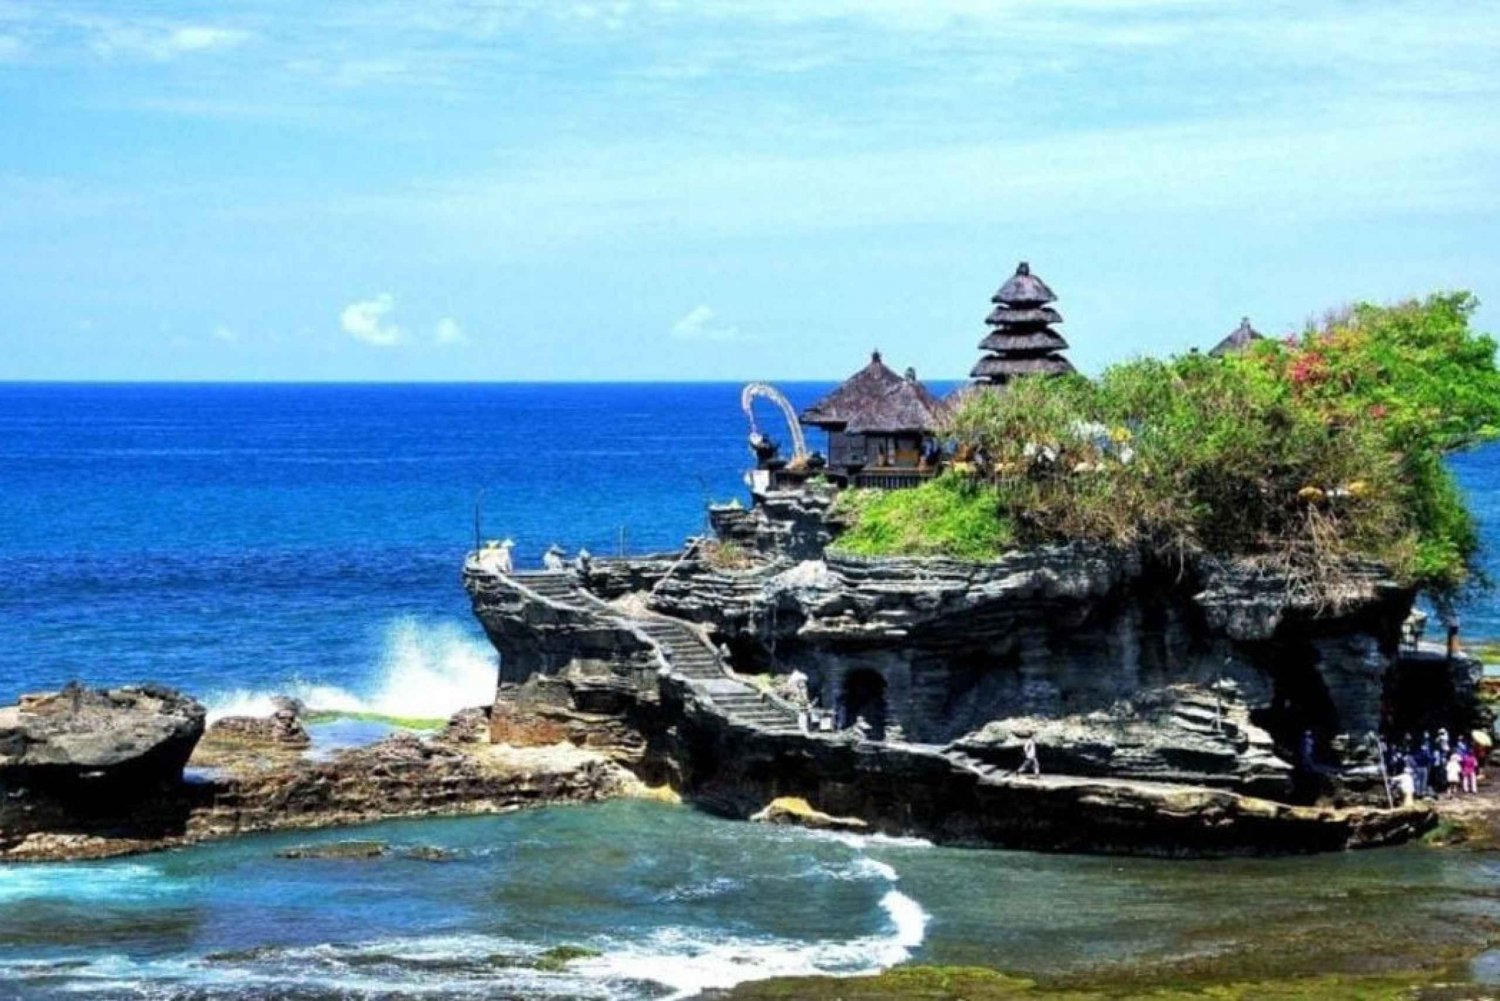 Bali : Tanah Lot Tempel, Padang-padang Strand, Kecak Tanz